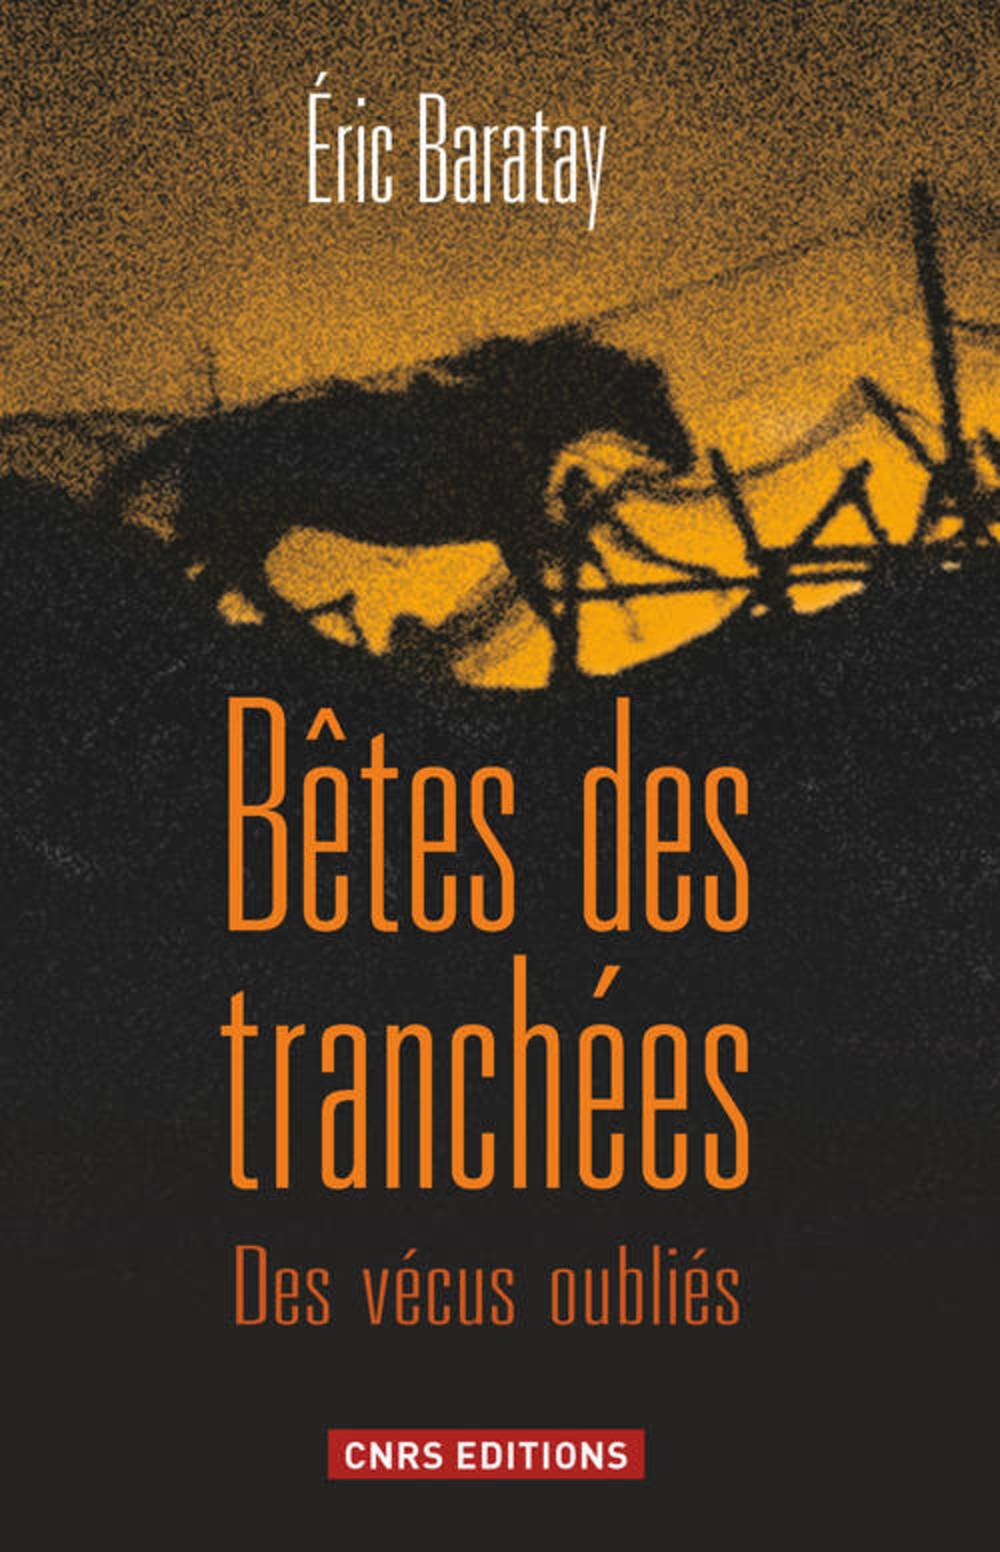 Bêtes des tranchées. Des vécus oubliés, 2013, 255 p.